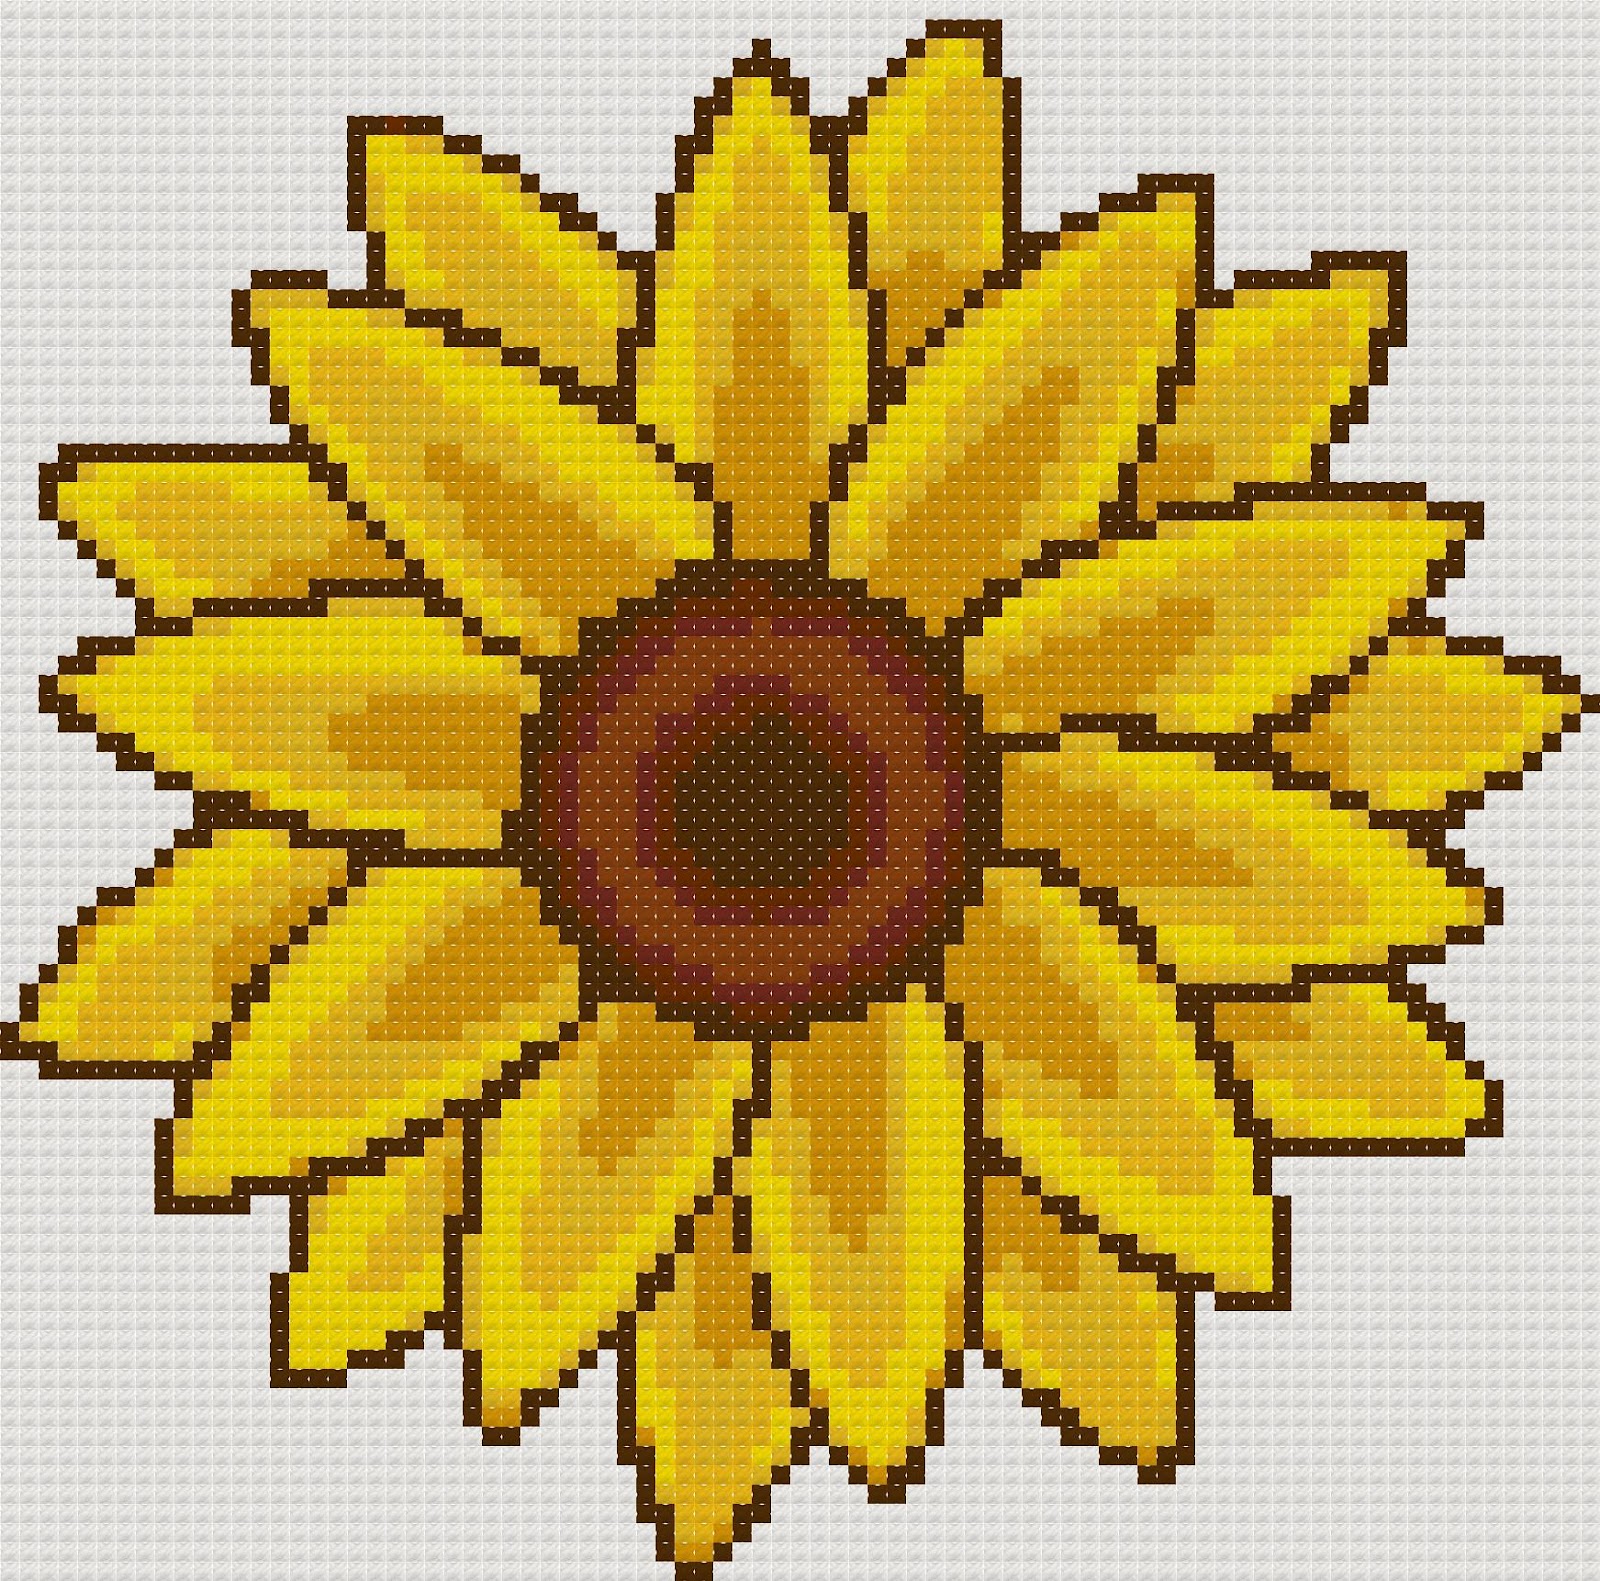 Yiota's Cross Stitch: Sunflower free cross stitch pattern